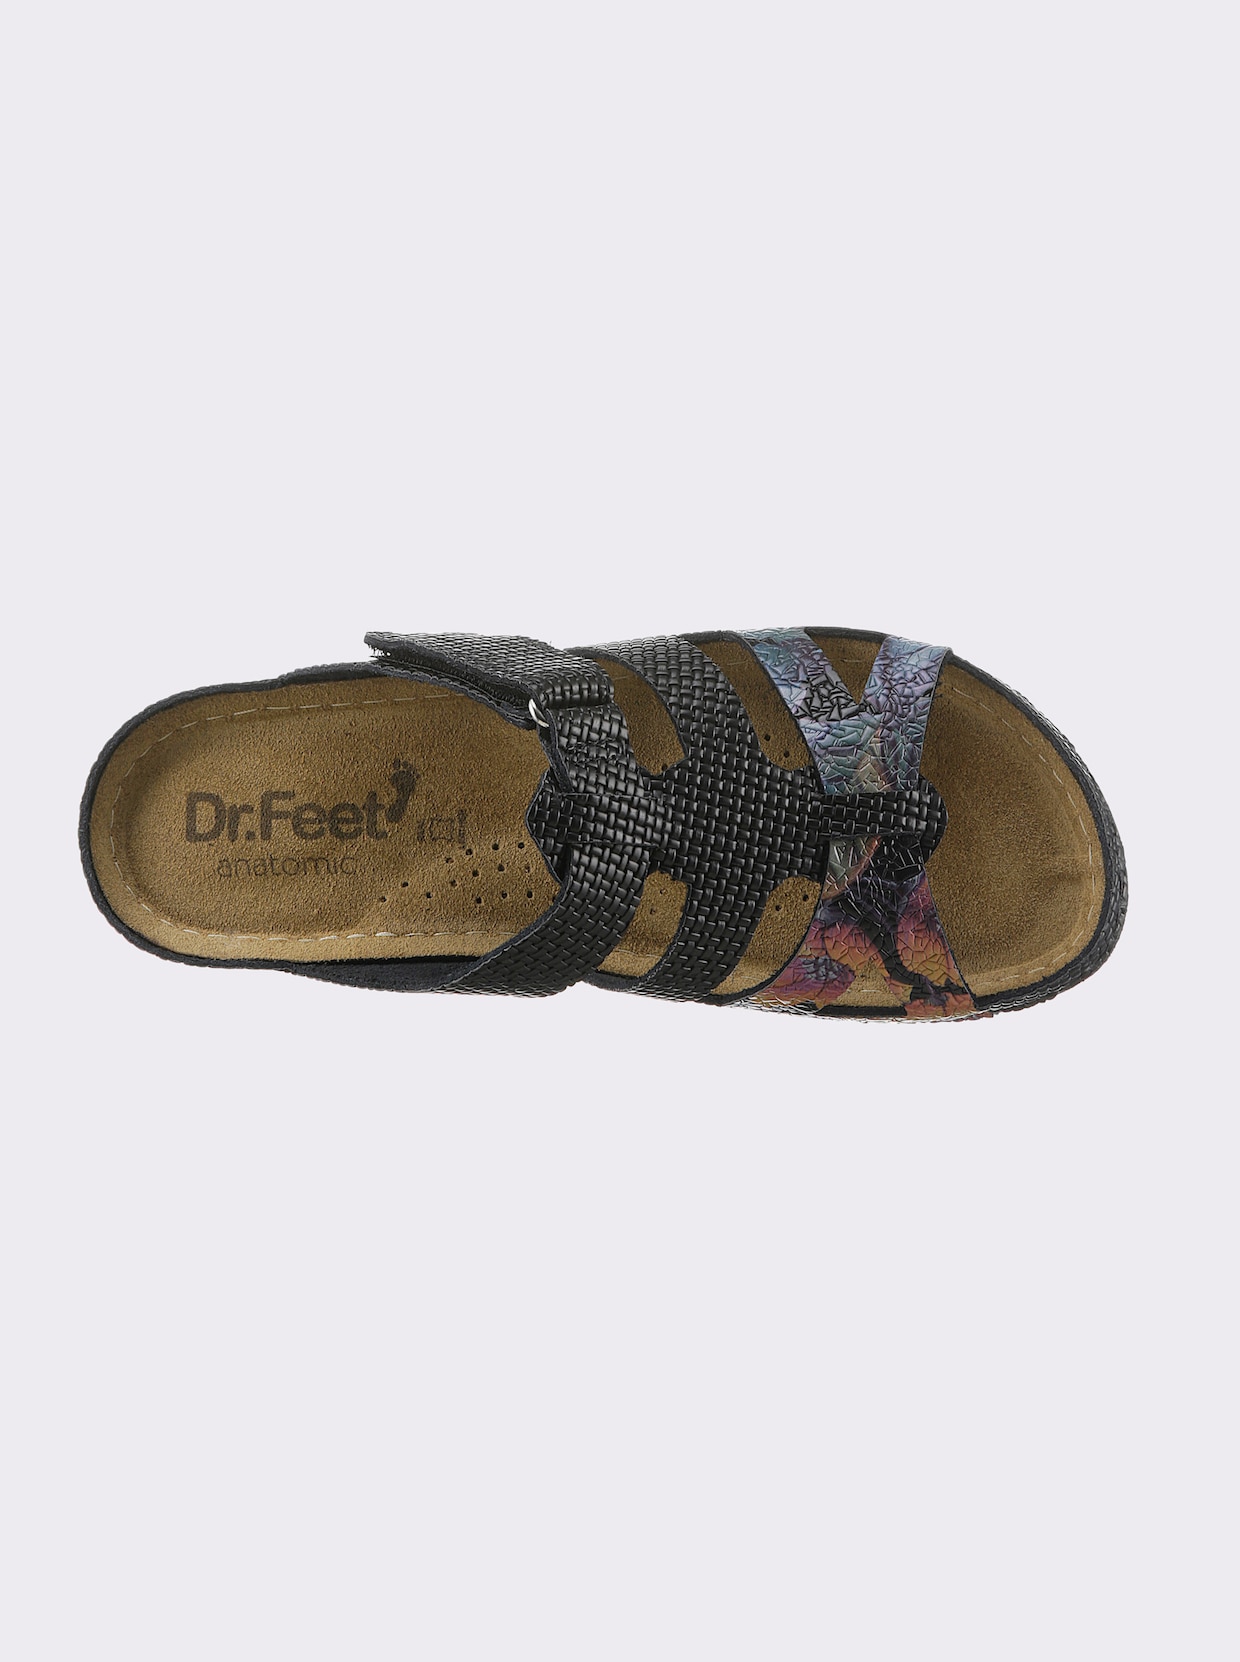 Dr. Feet Pantolette - schwarz-geblümt